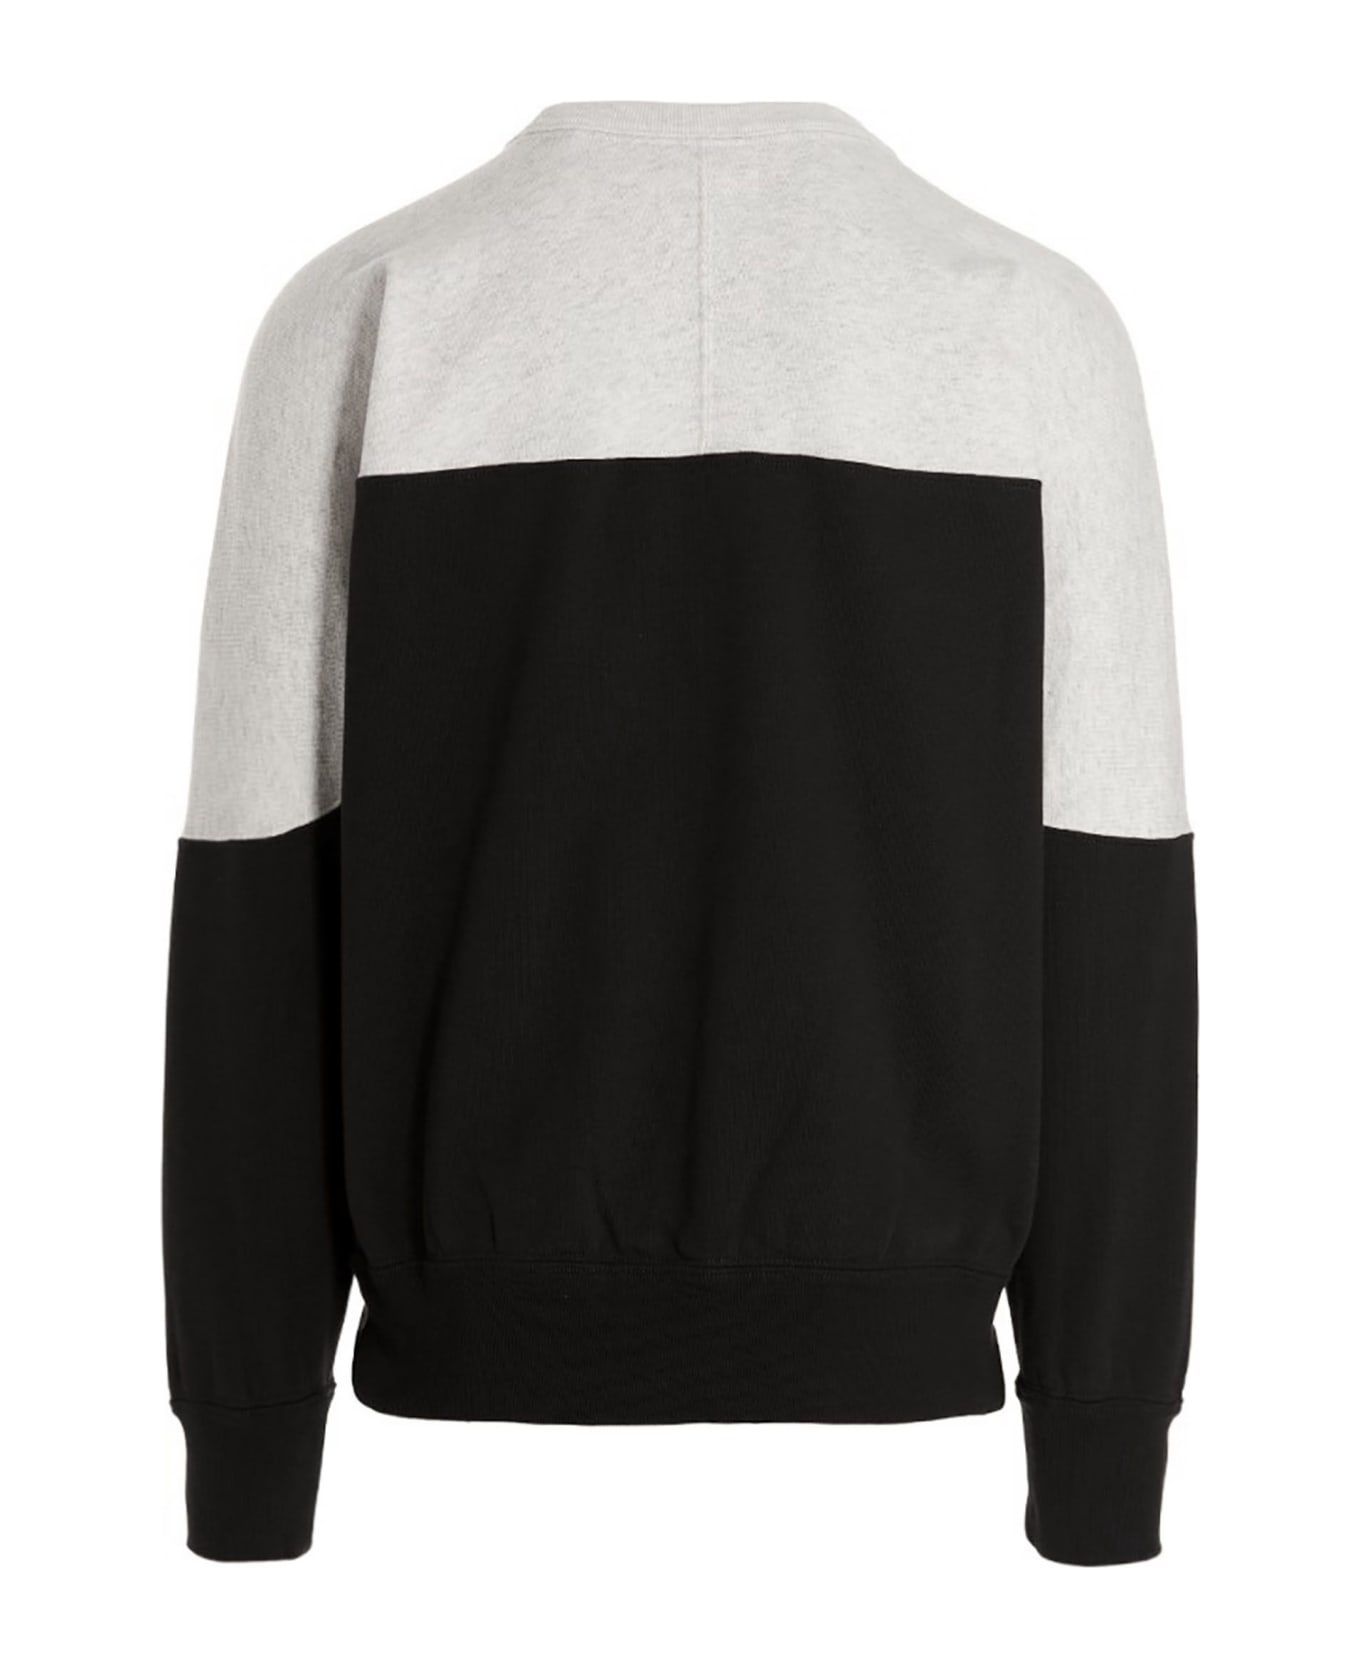 Isabel Marant White And Black Cotton Sweatshirt - Black